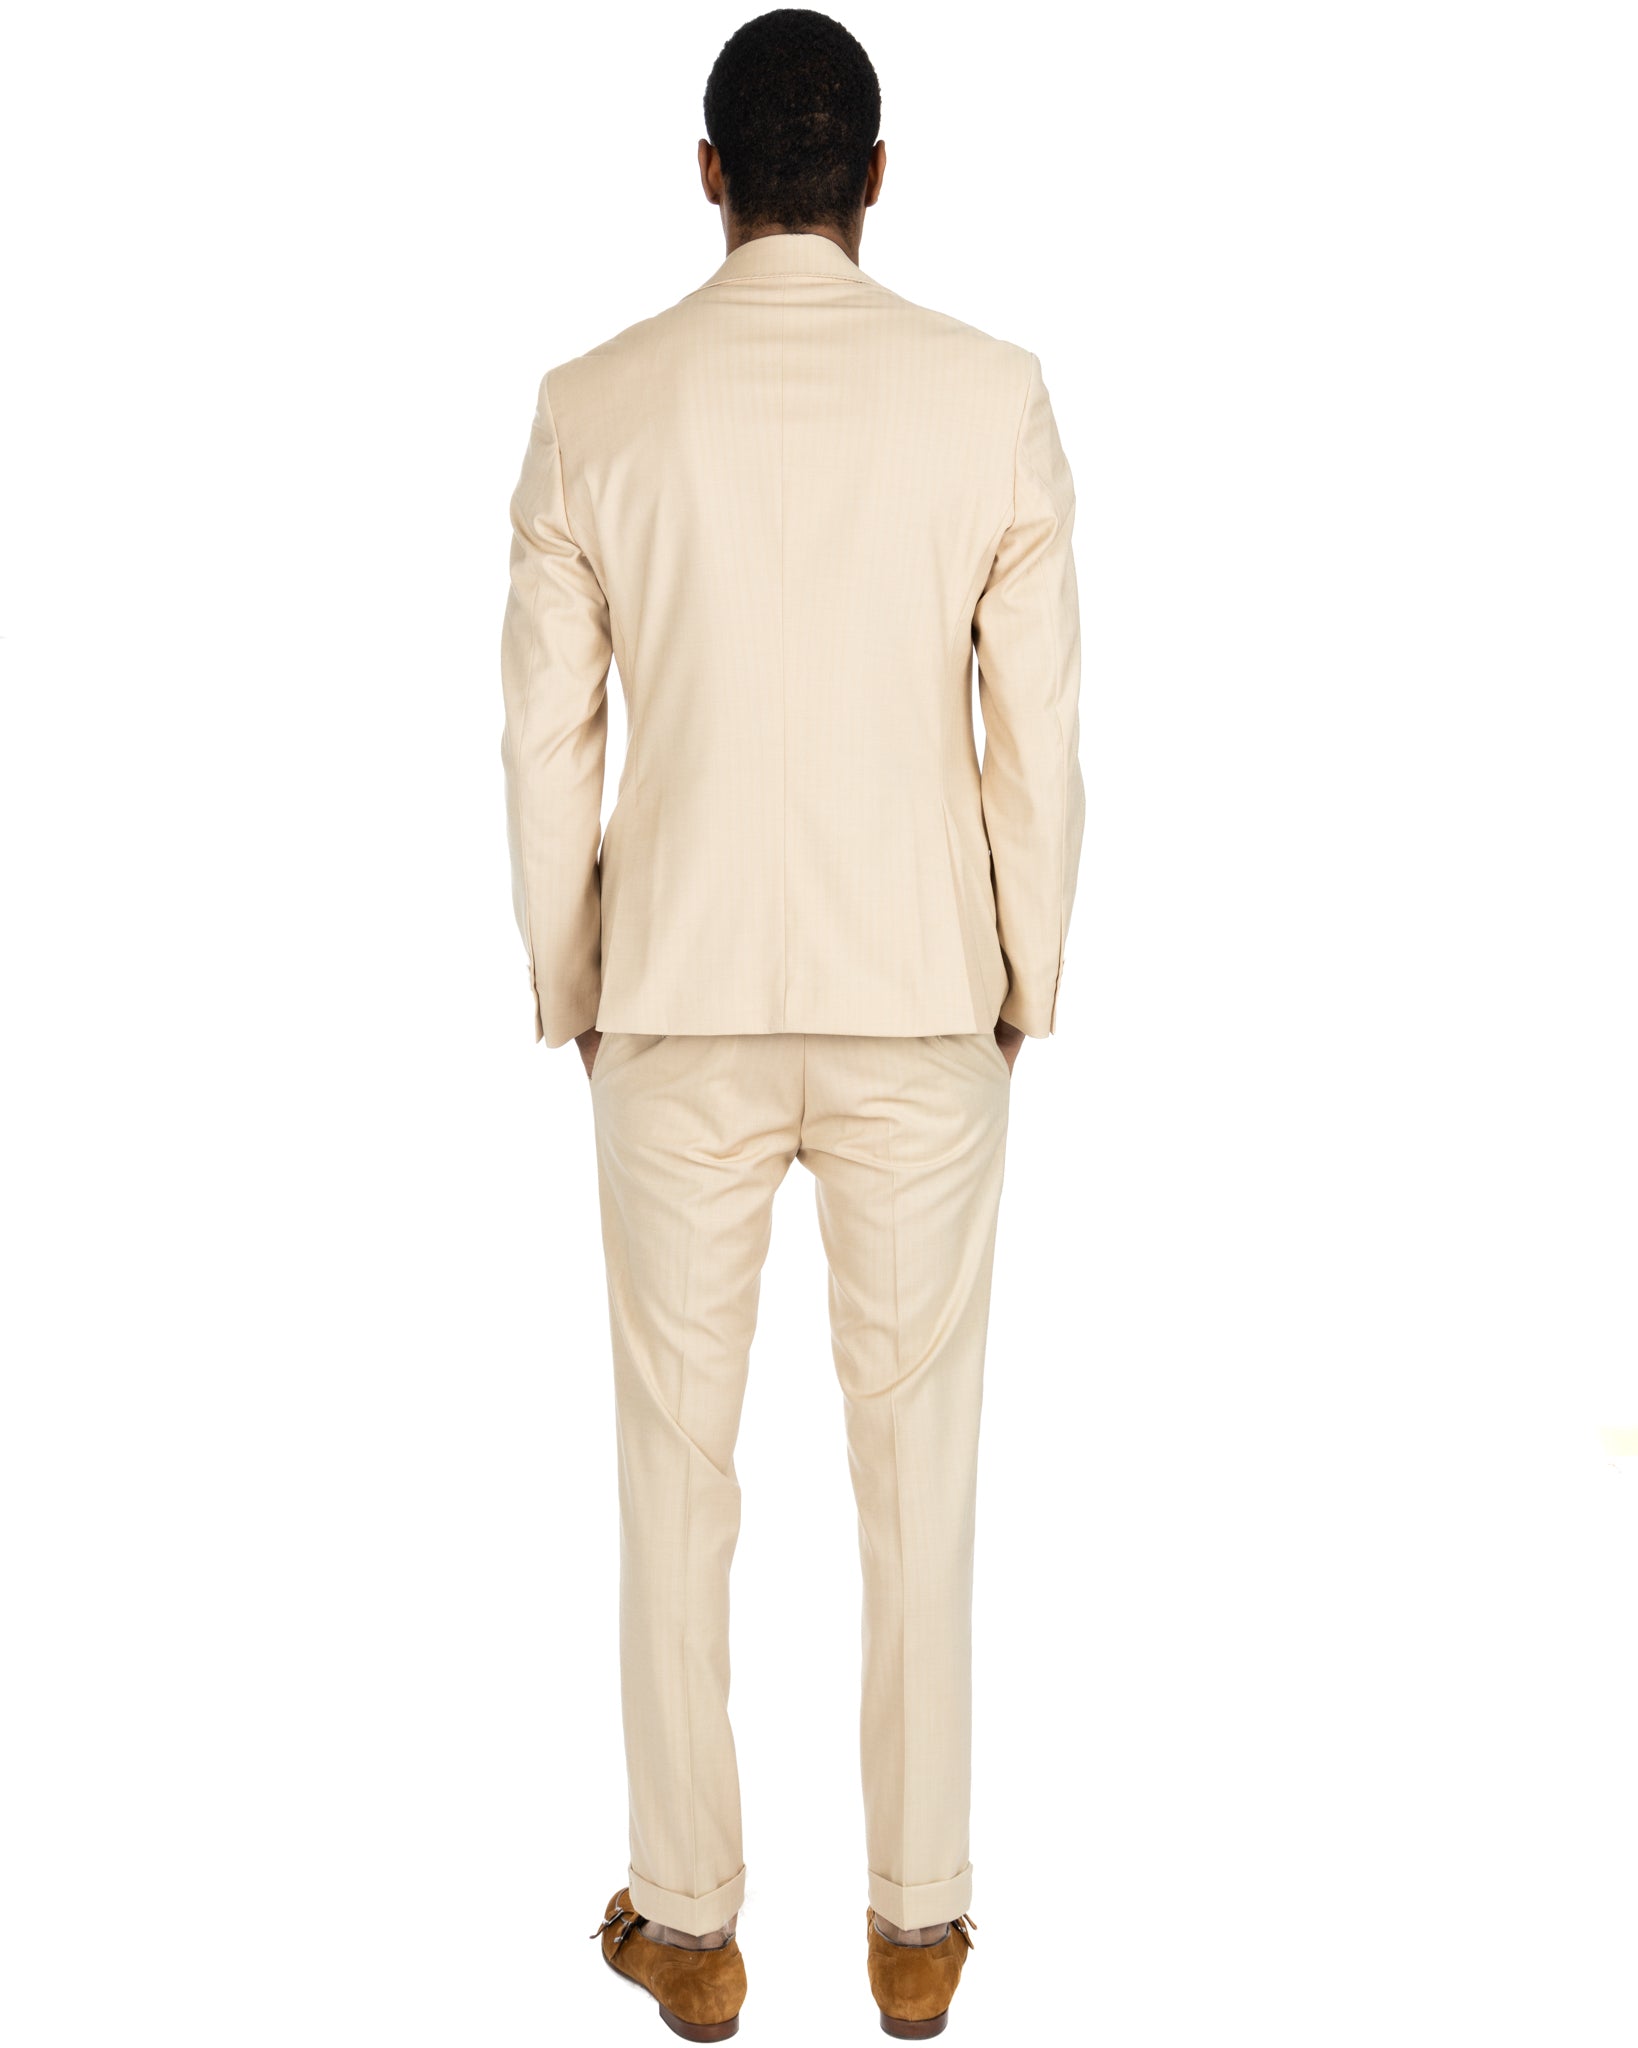 Paris - light beige solaro single-breasted suit